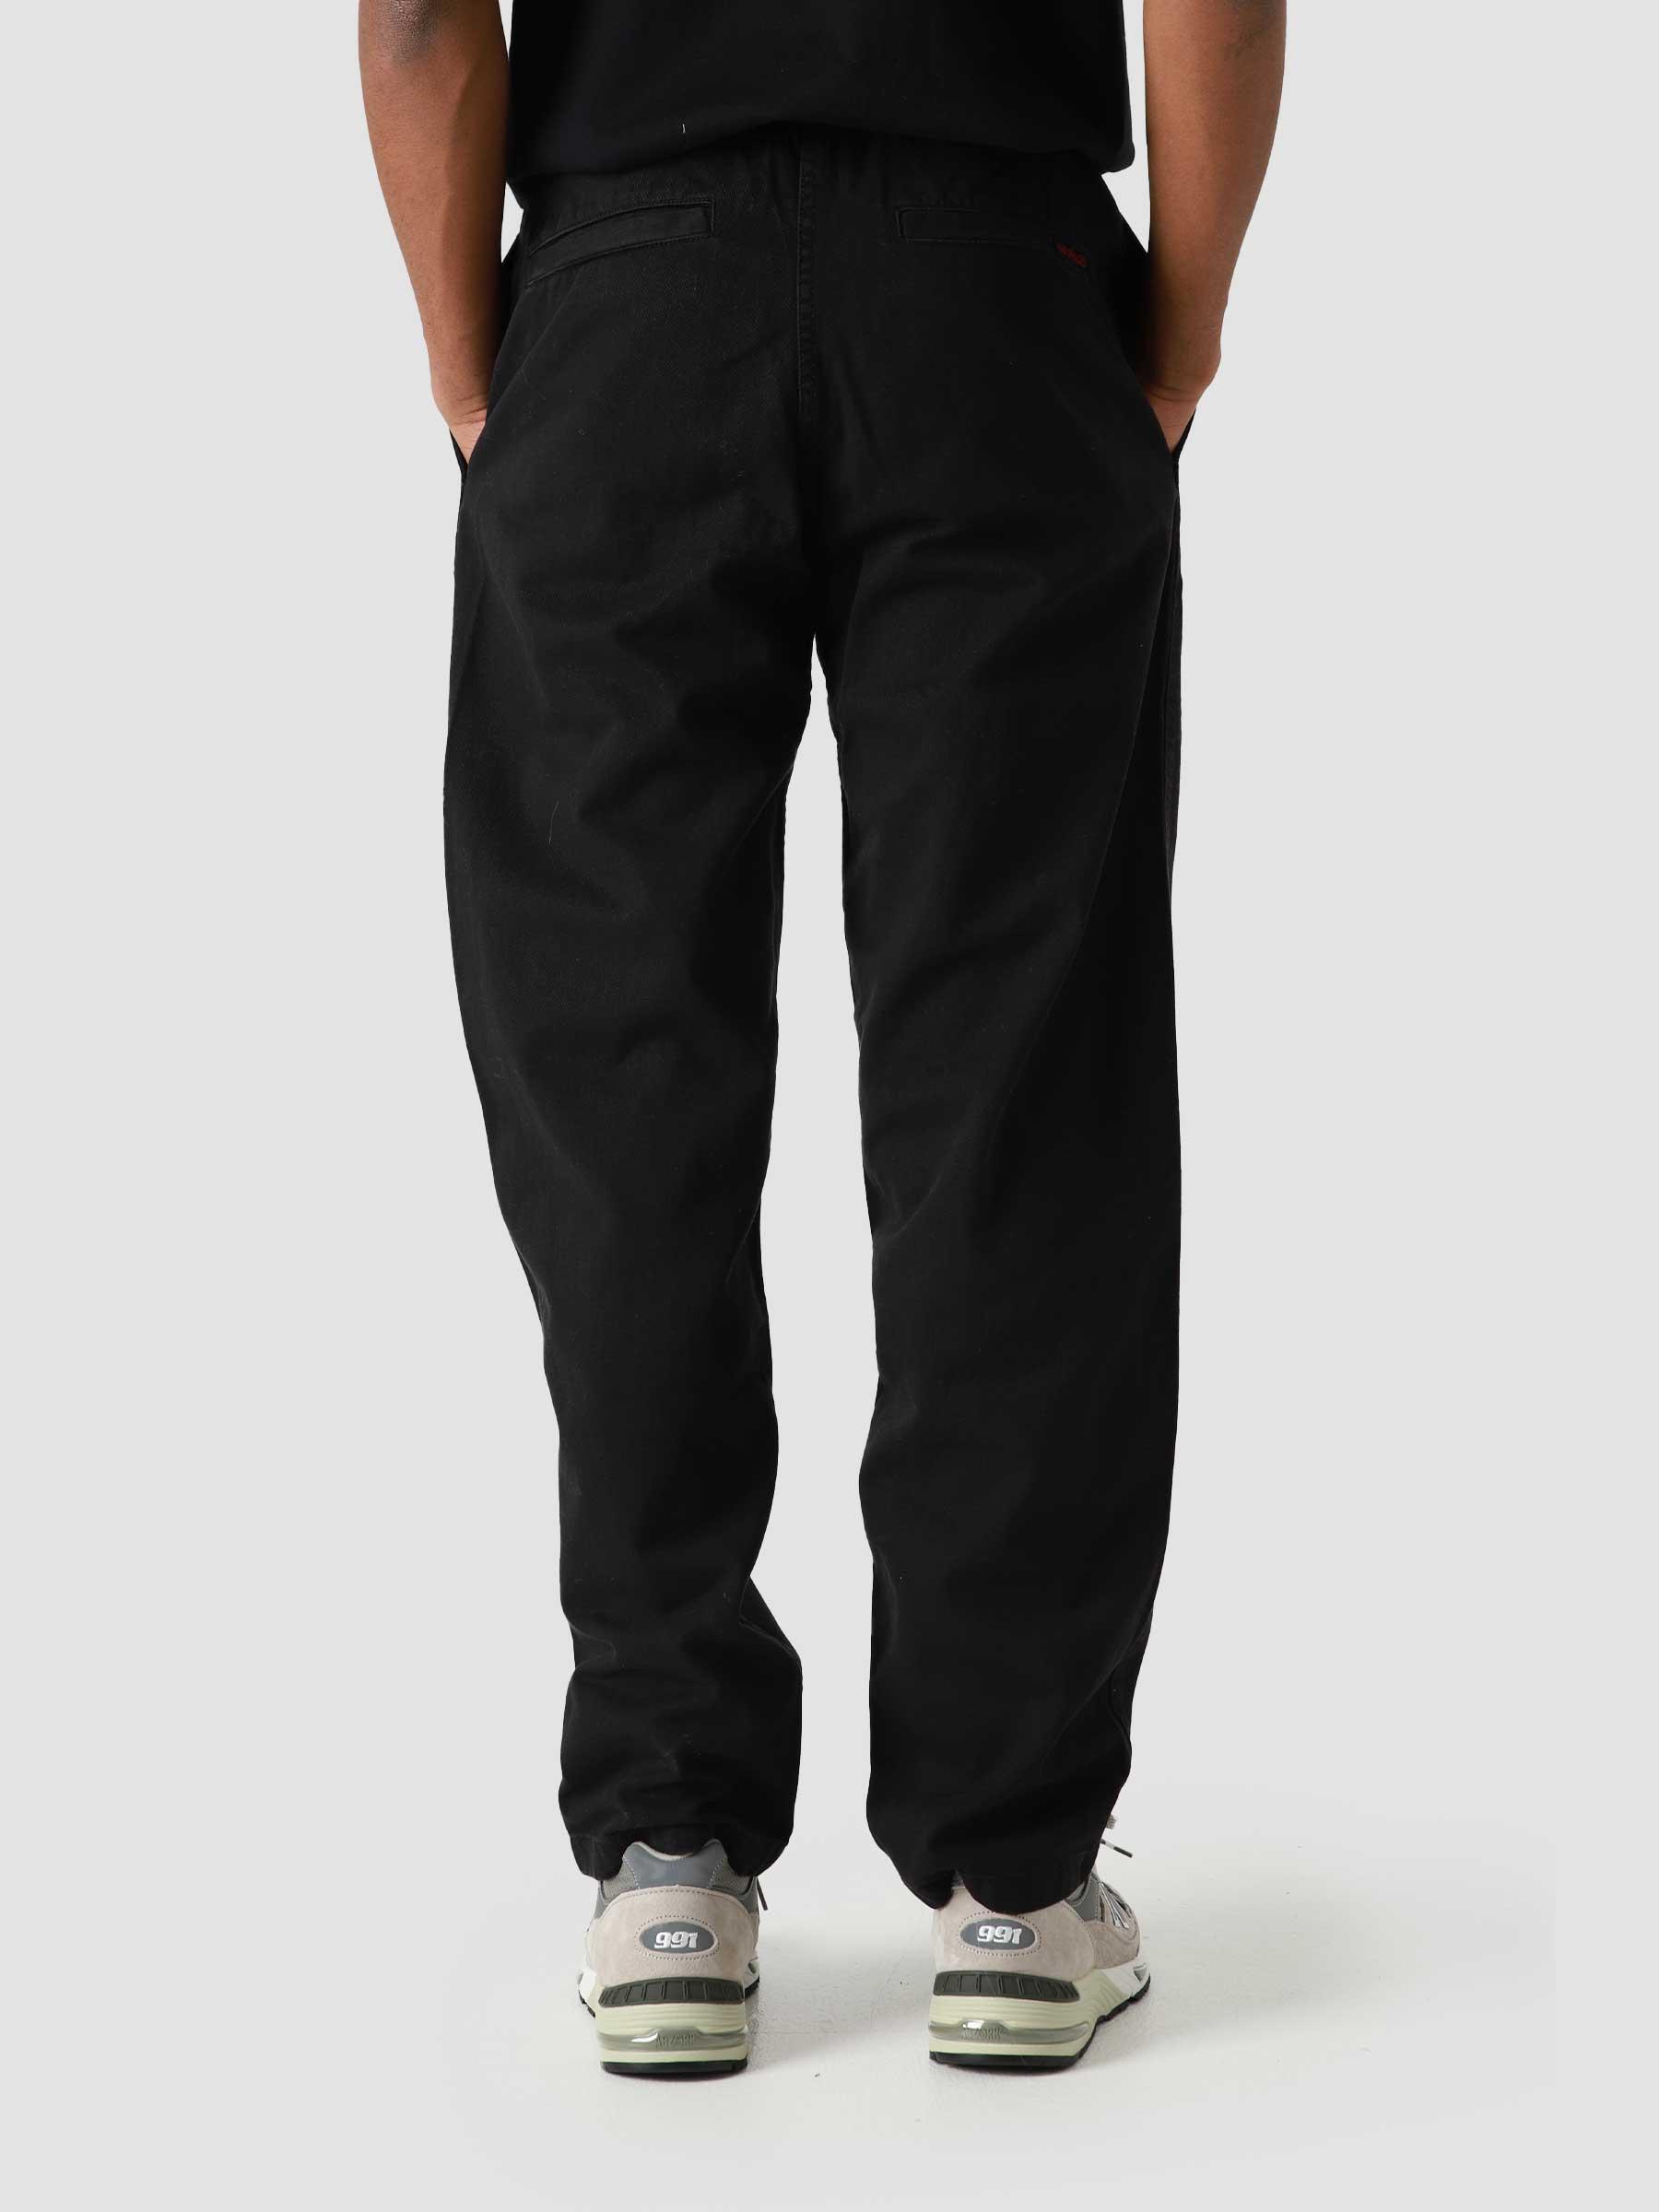 Pants Black 8657-56J